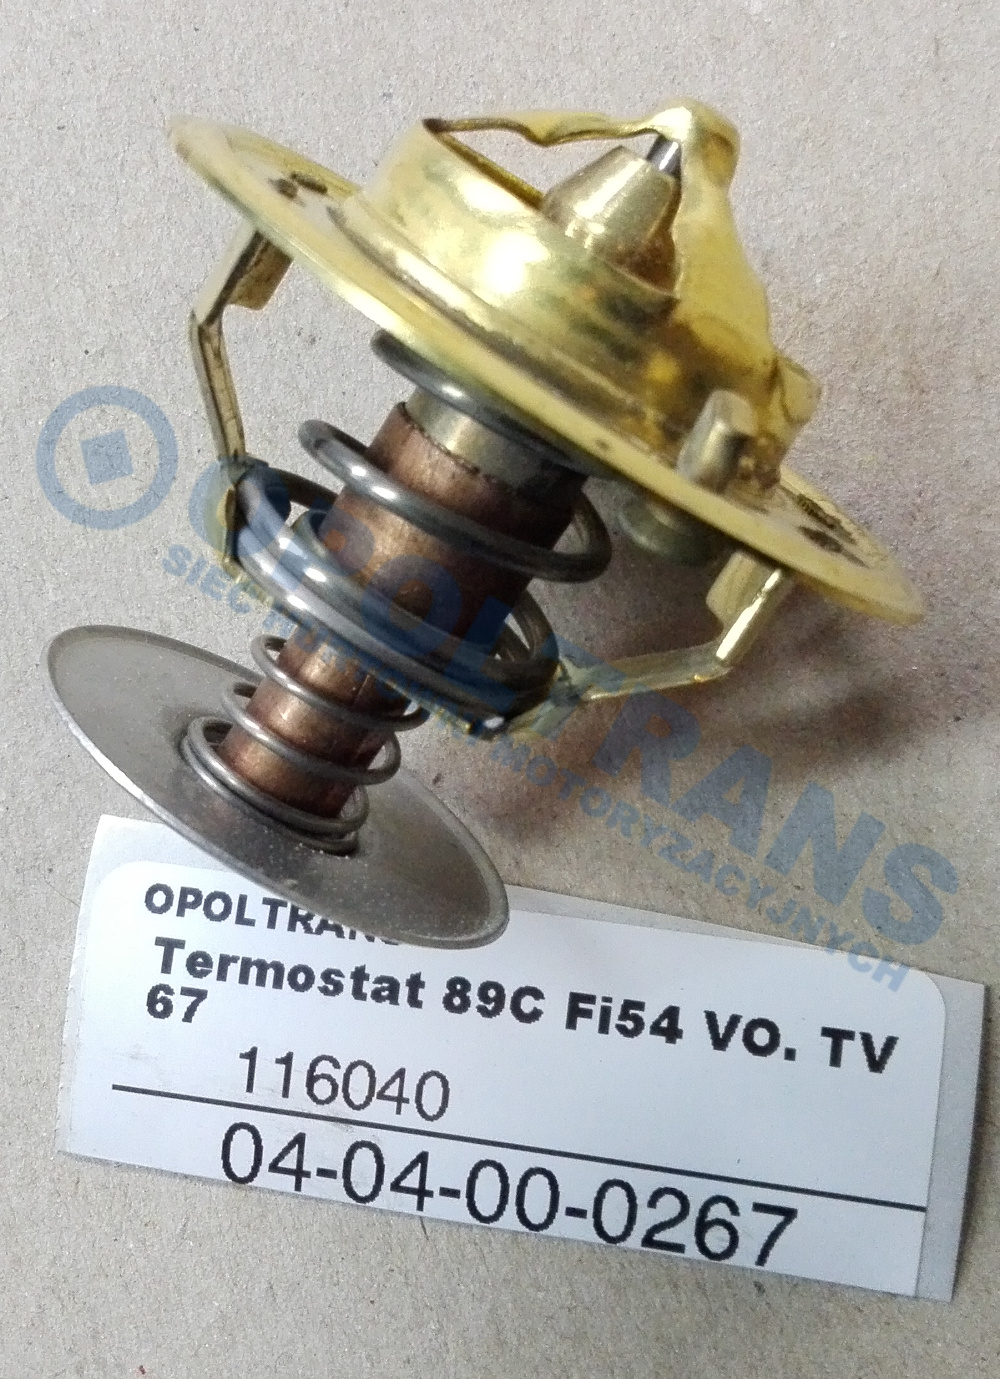  Termostat  89C  Fi54  VO.  TV67 